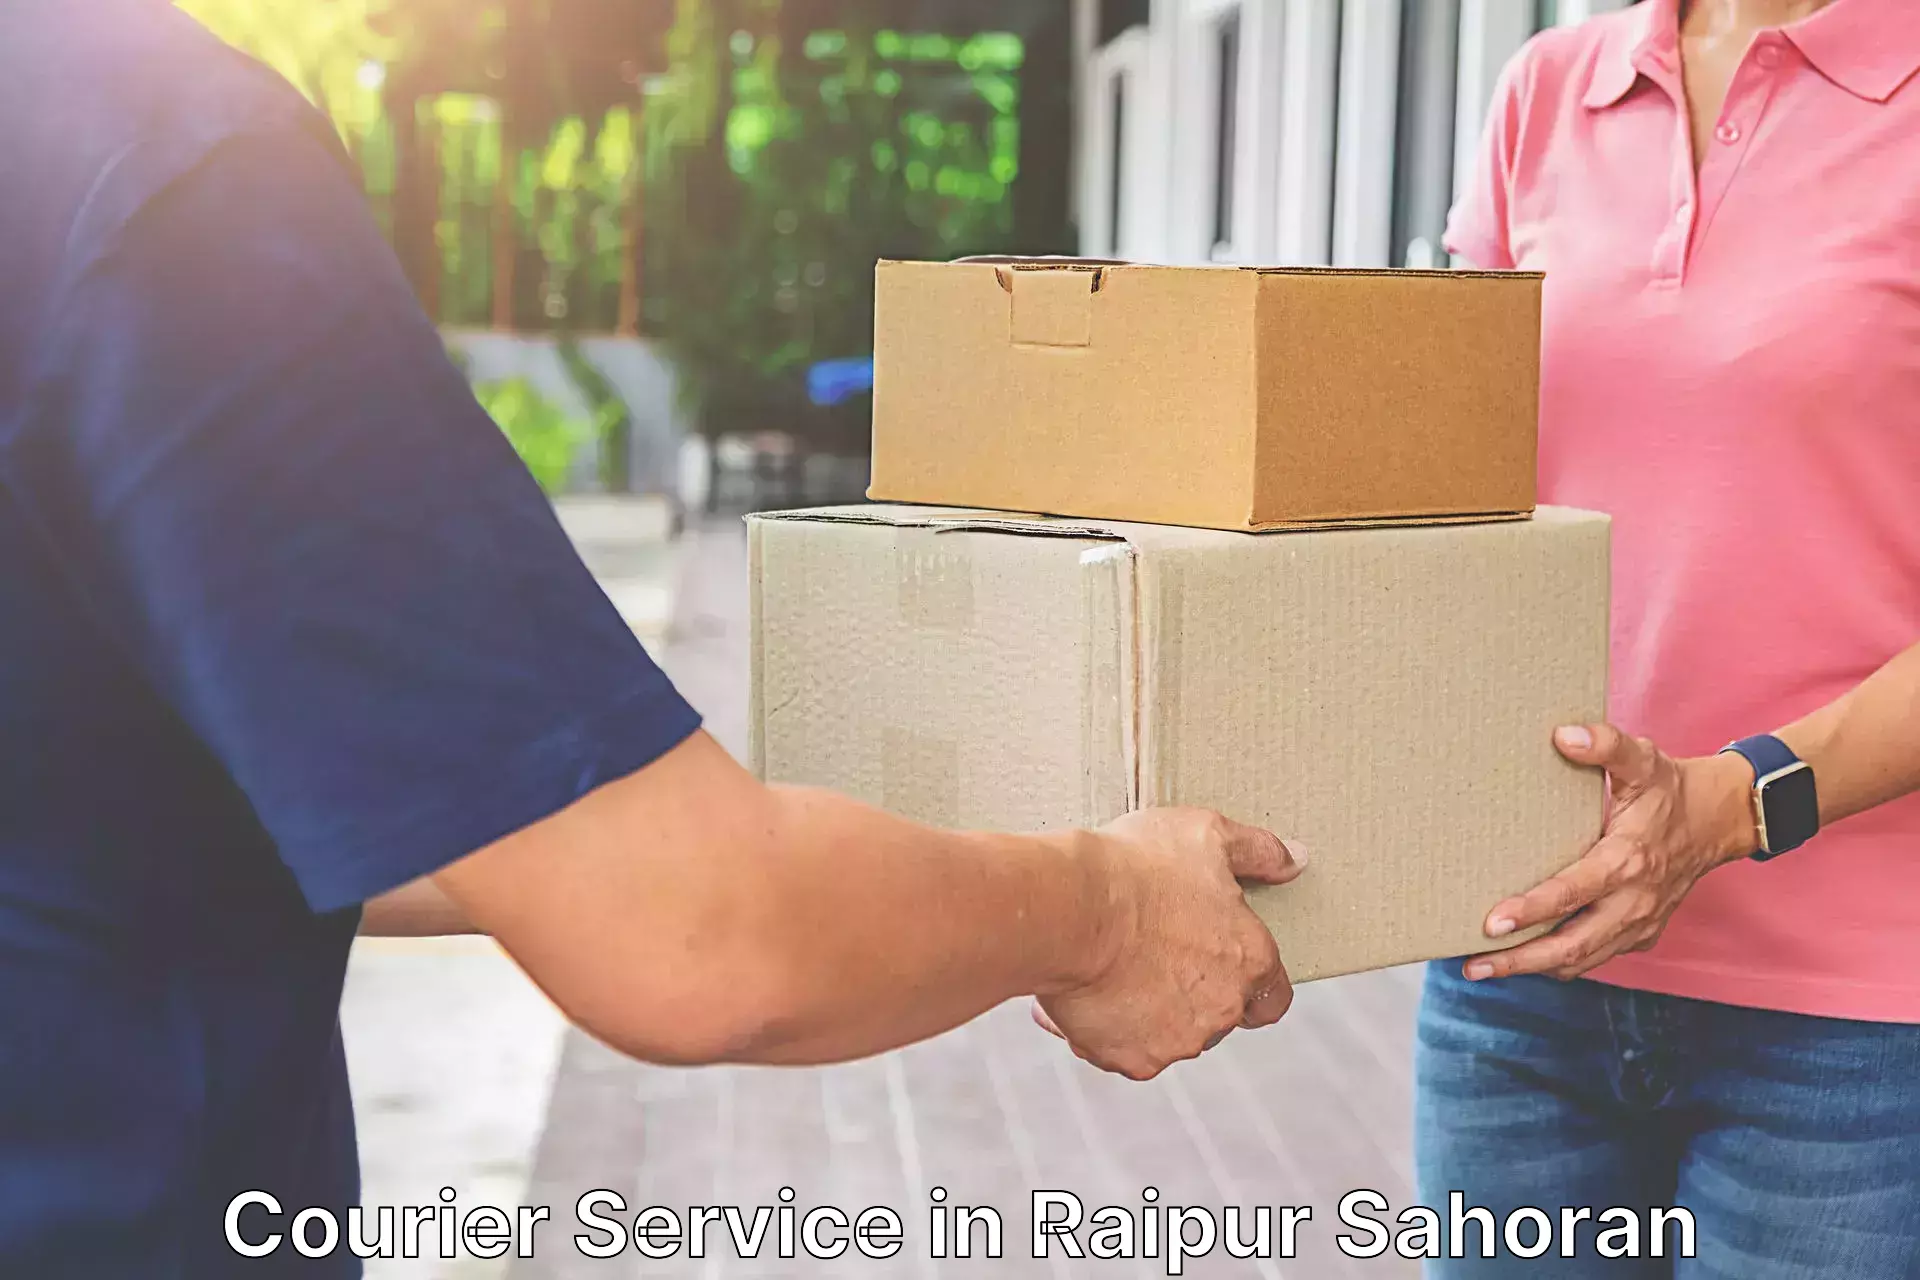 International parcel service in Raipur Sahoran